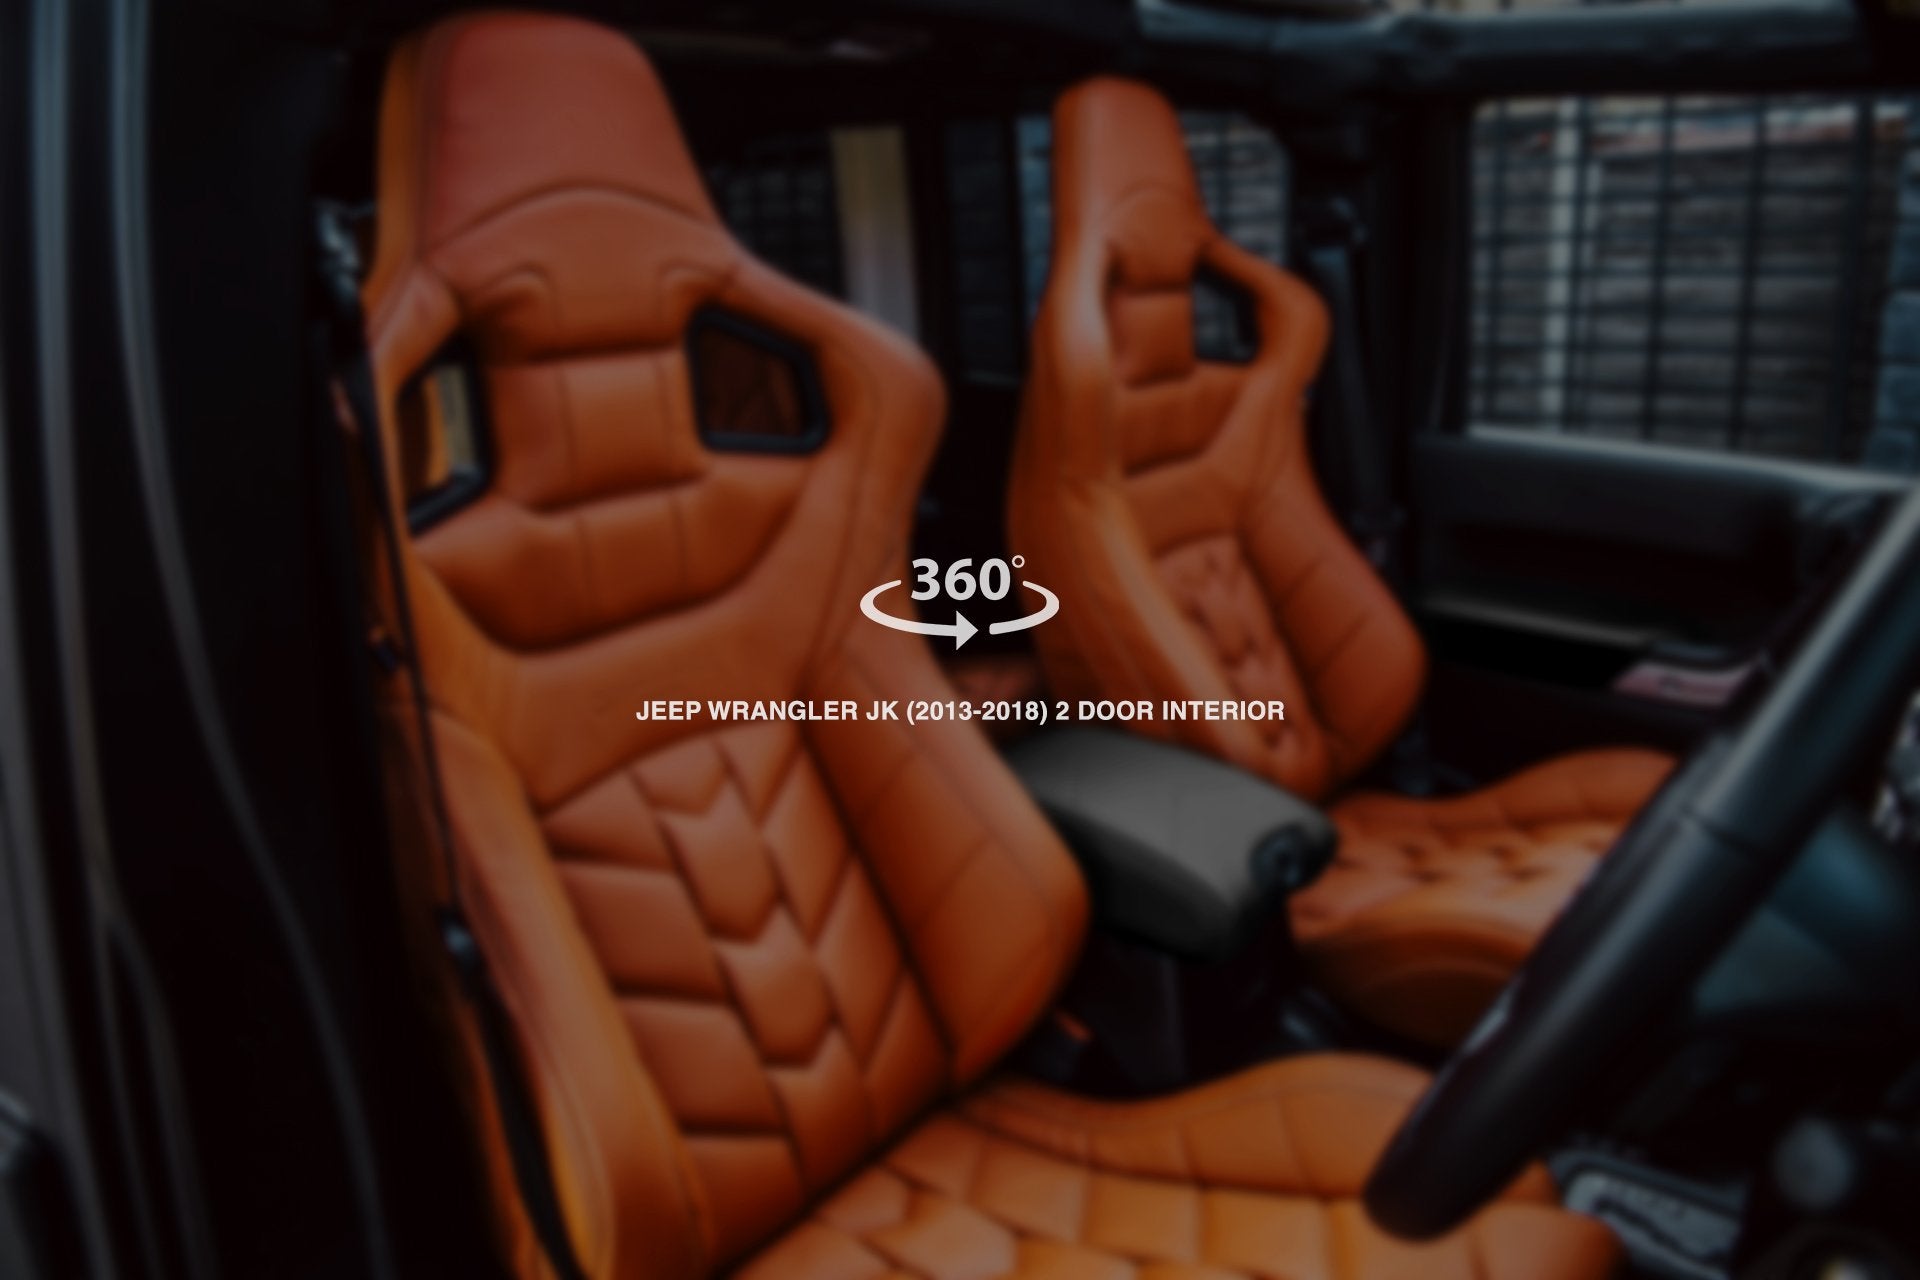 Jeep Wrangler jk 2 Door (2007-2018) Sport Leather Interior 360° Tour